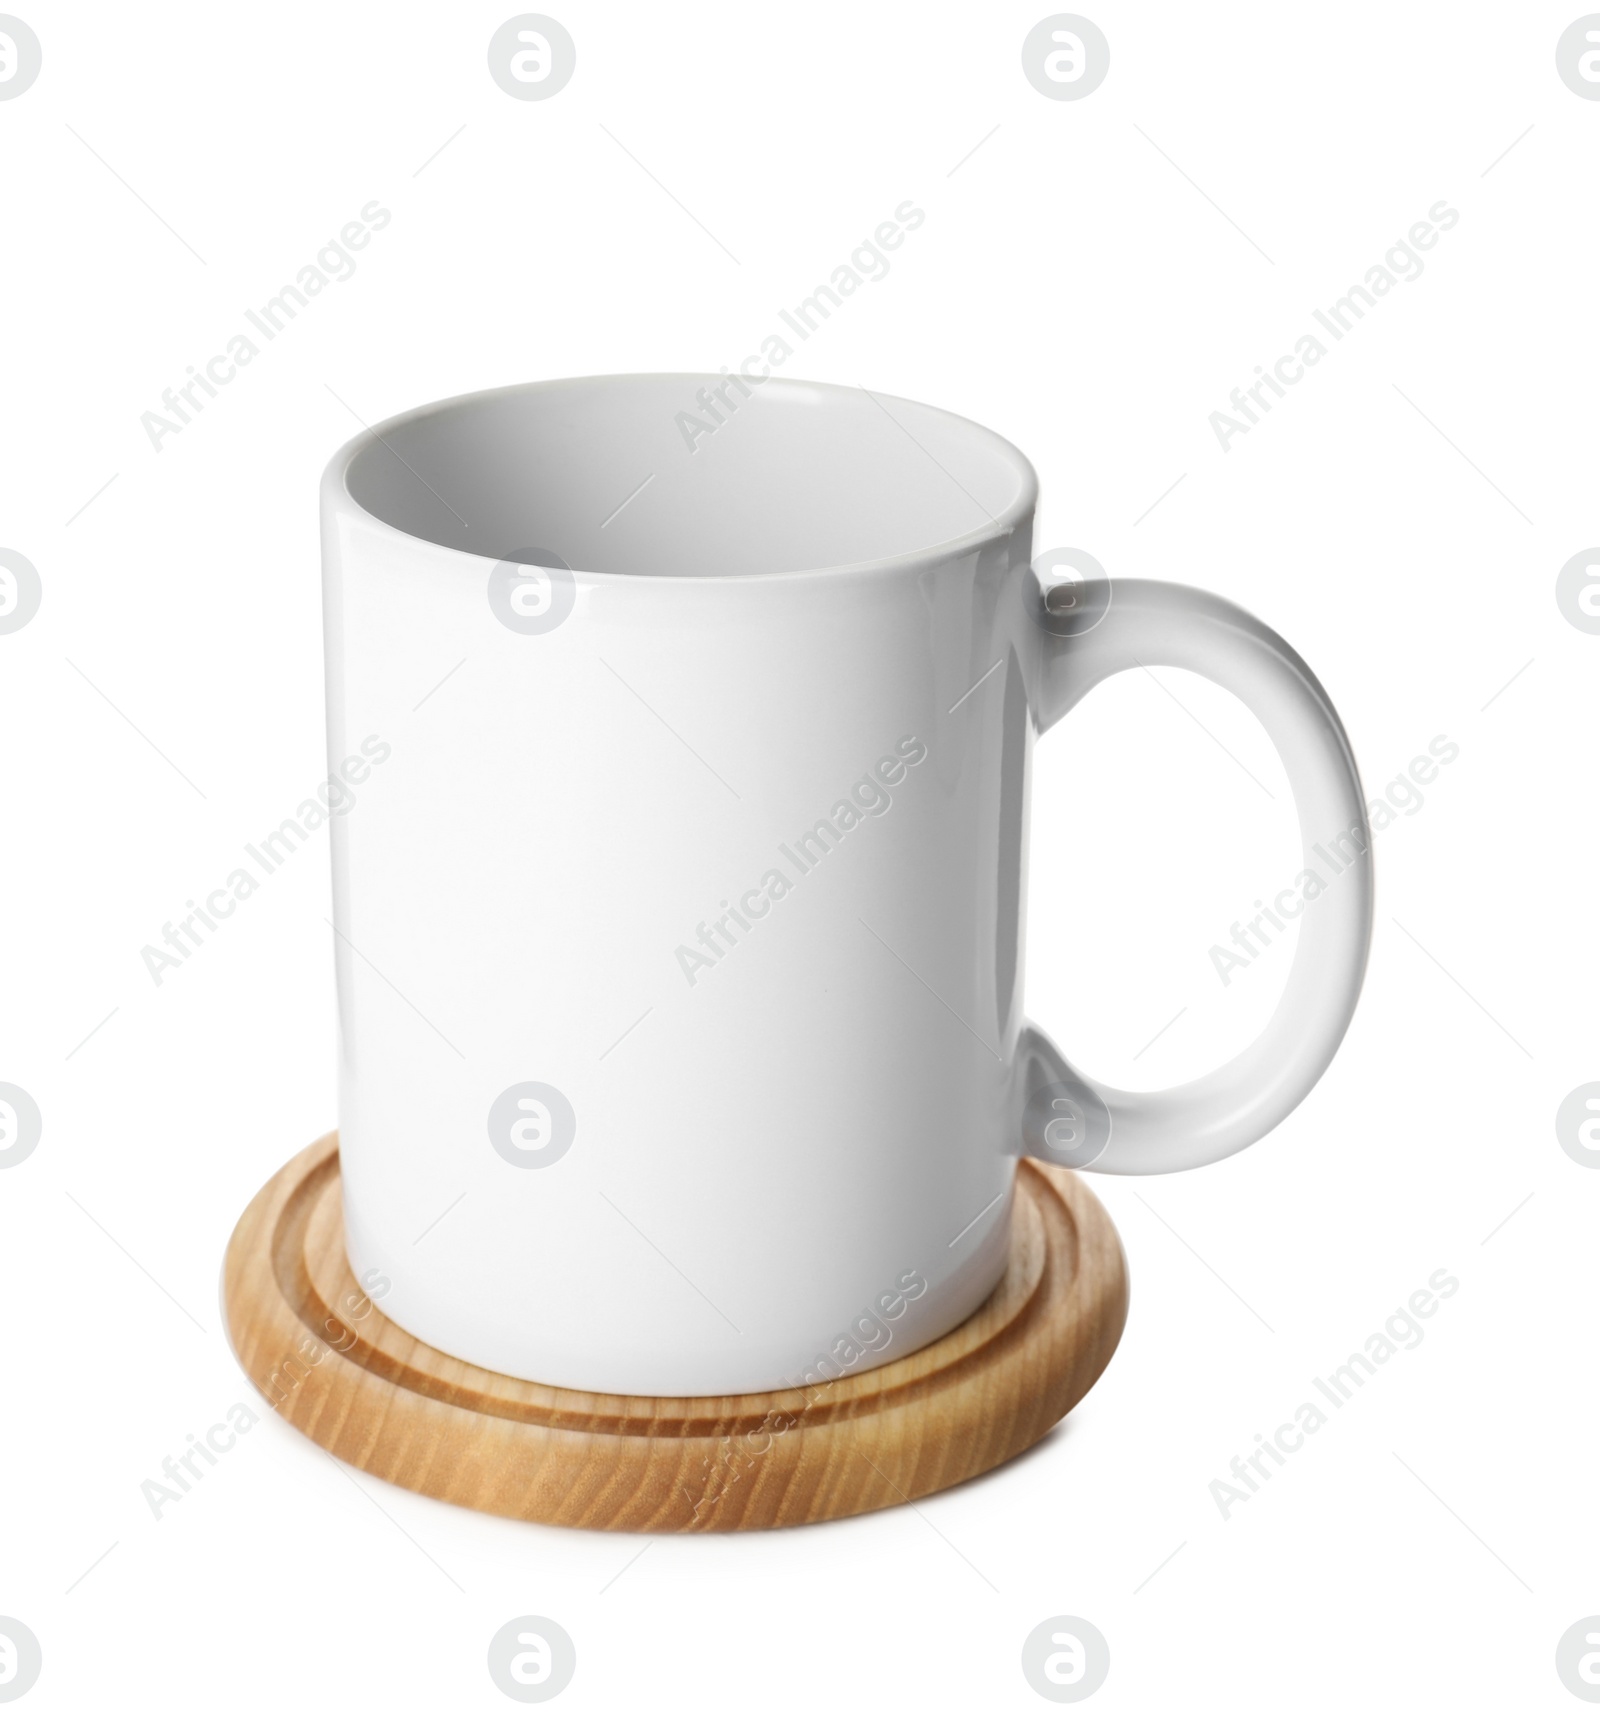 Photo of Mug and stylish wooden coaster on white background